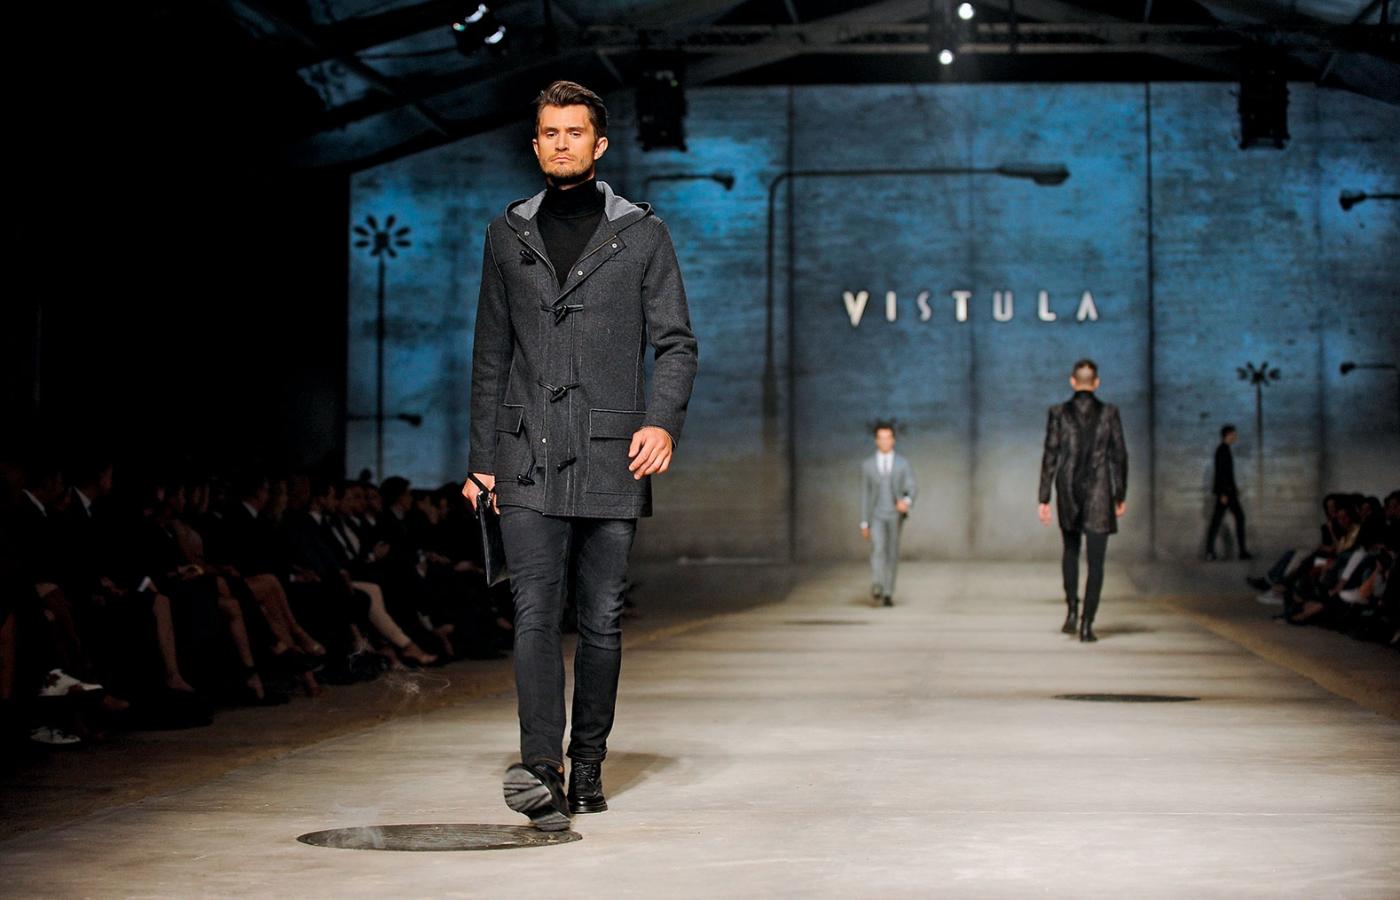 Vistula i Bytom, dwie spółki z branży odzieżowej produkujące eleganckie ubrania dla panów, zostaną połączone.